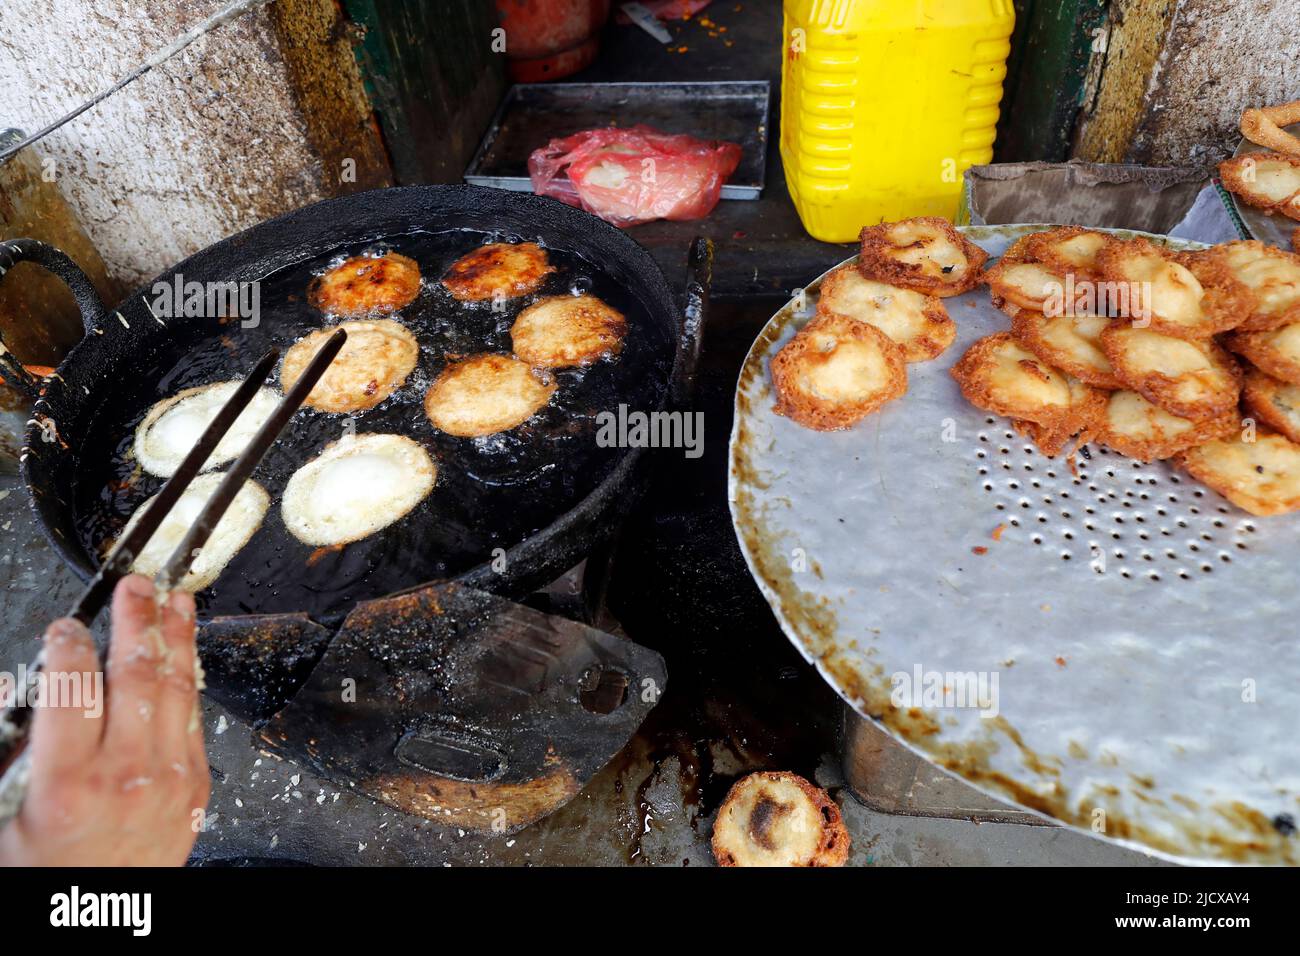 Restaurant népalais traditionnel, plat sel Roti, petit déjeuner traditionnel pour les népalais, Katmandou, Népal, Asie Banque D'Images